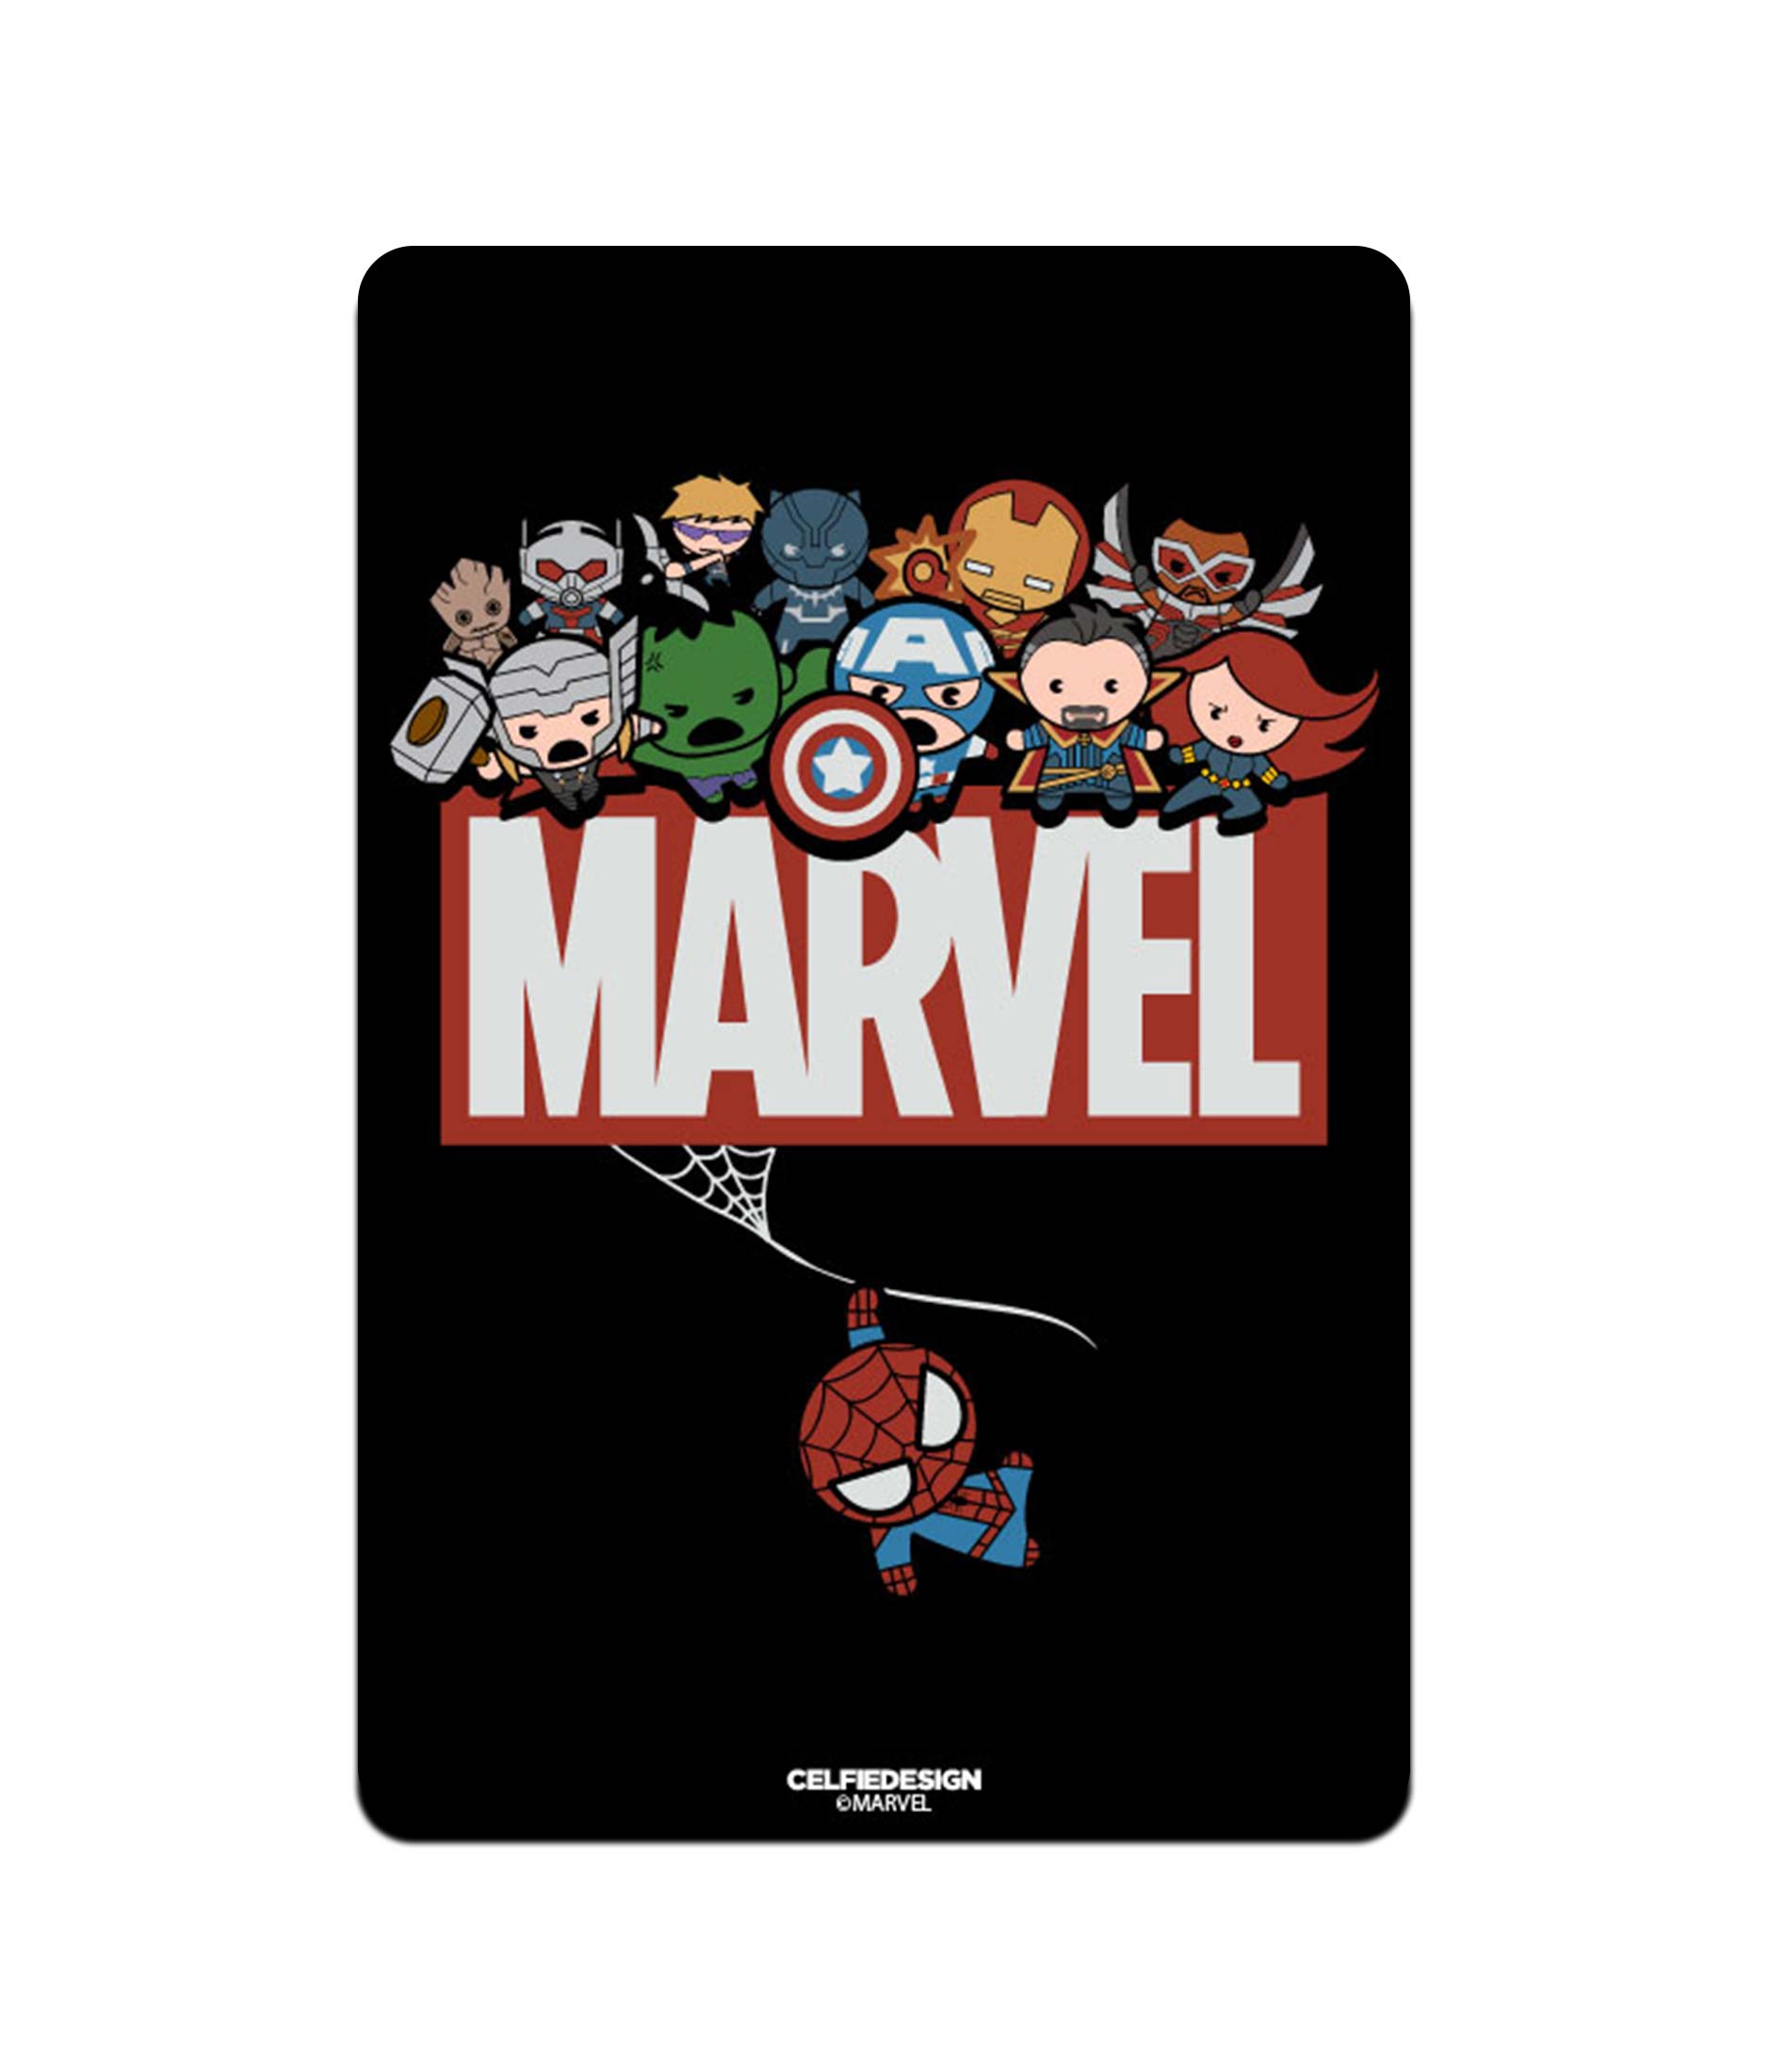 Avengers Assemble Kawaii - Fridge Magnets